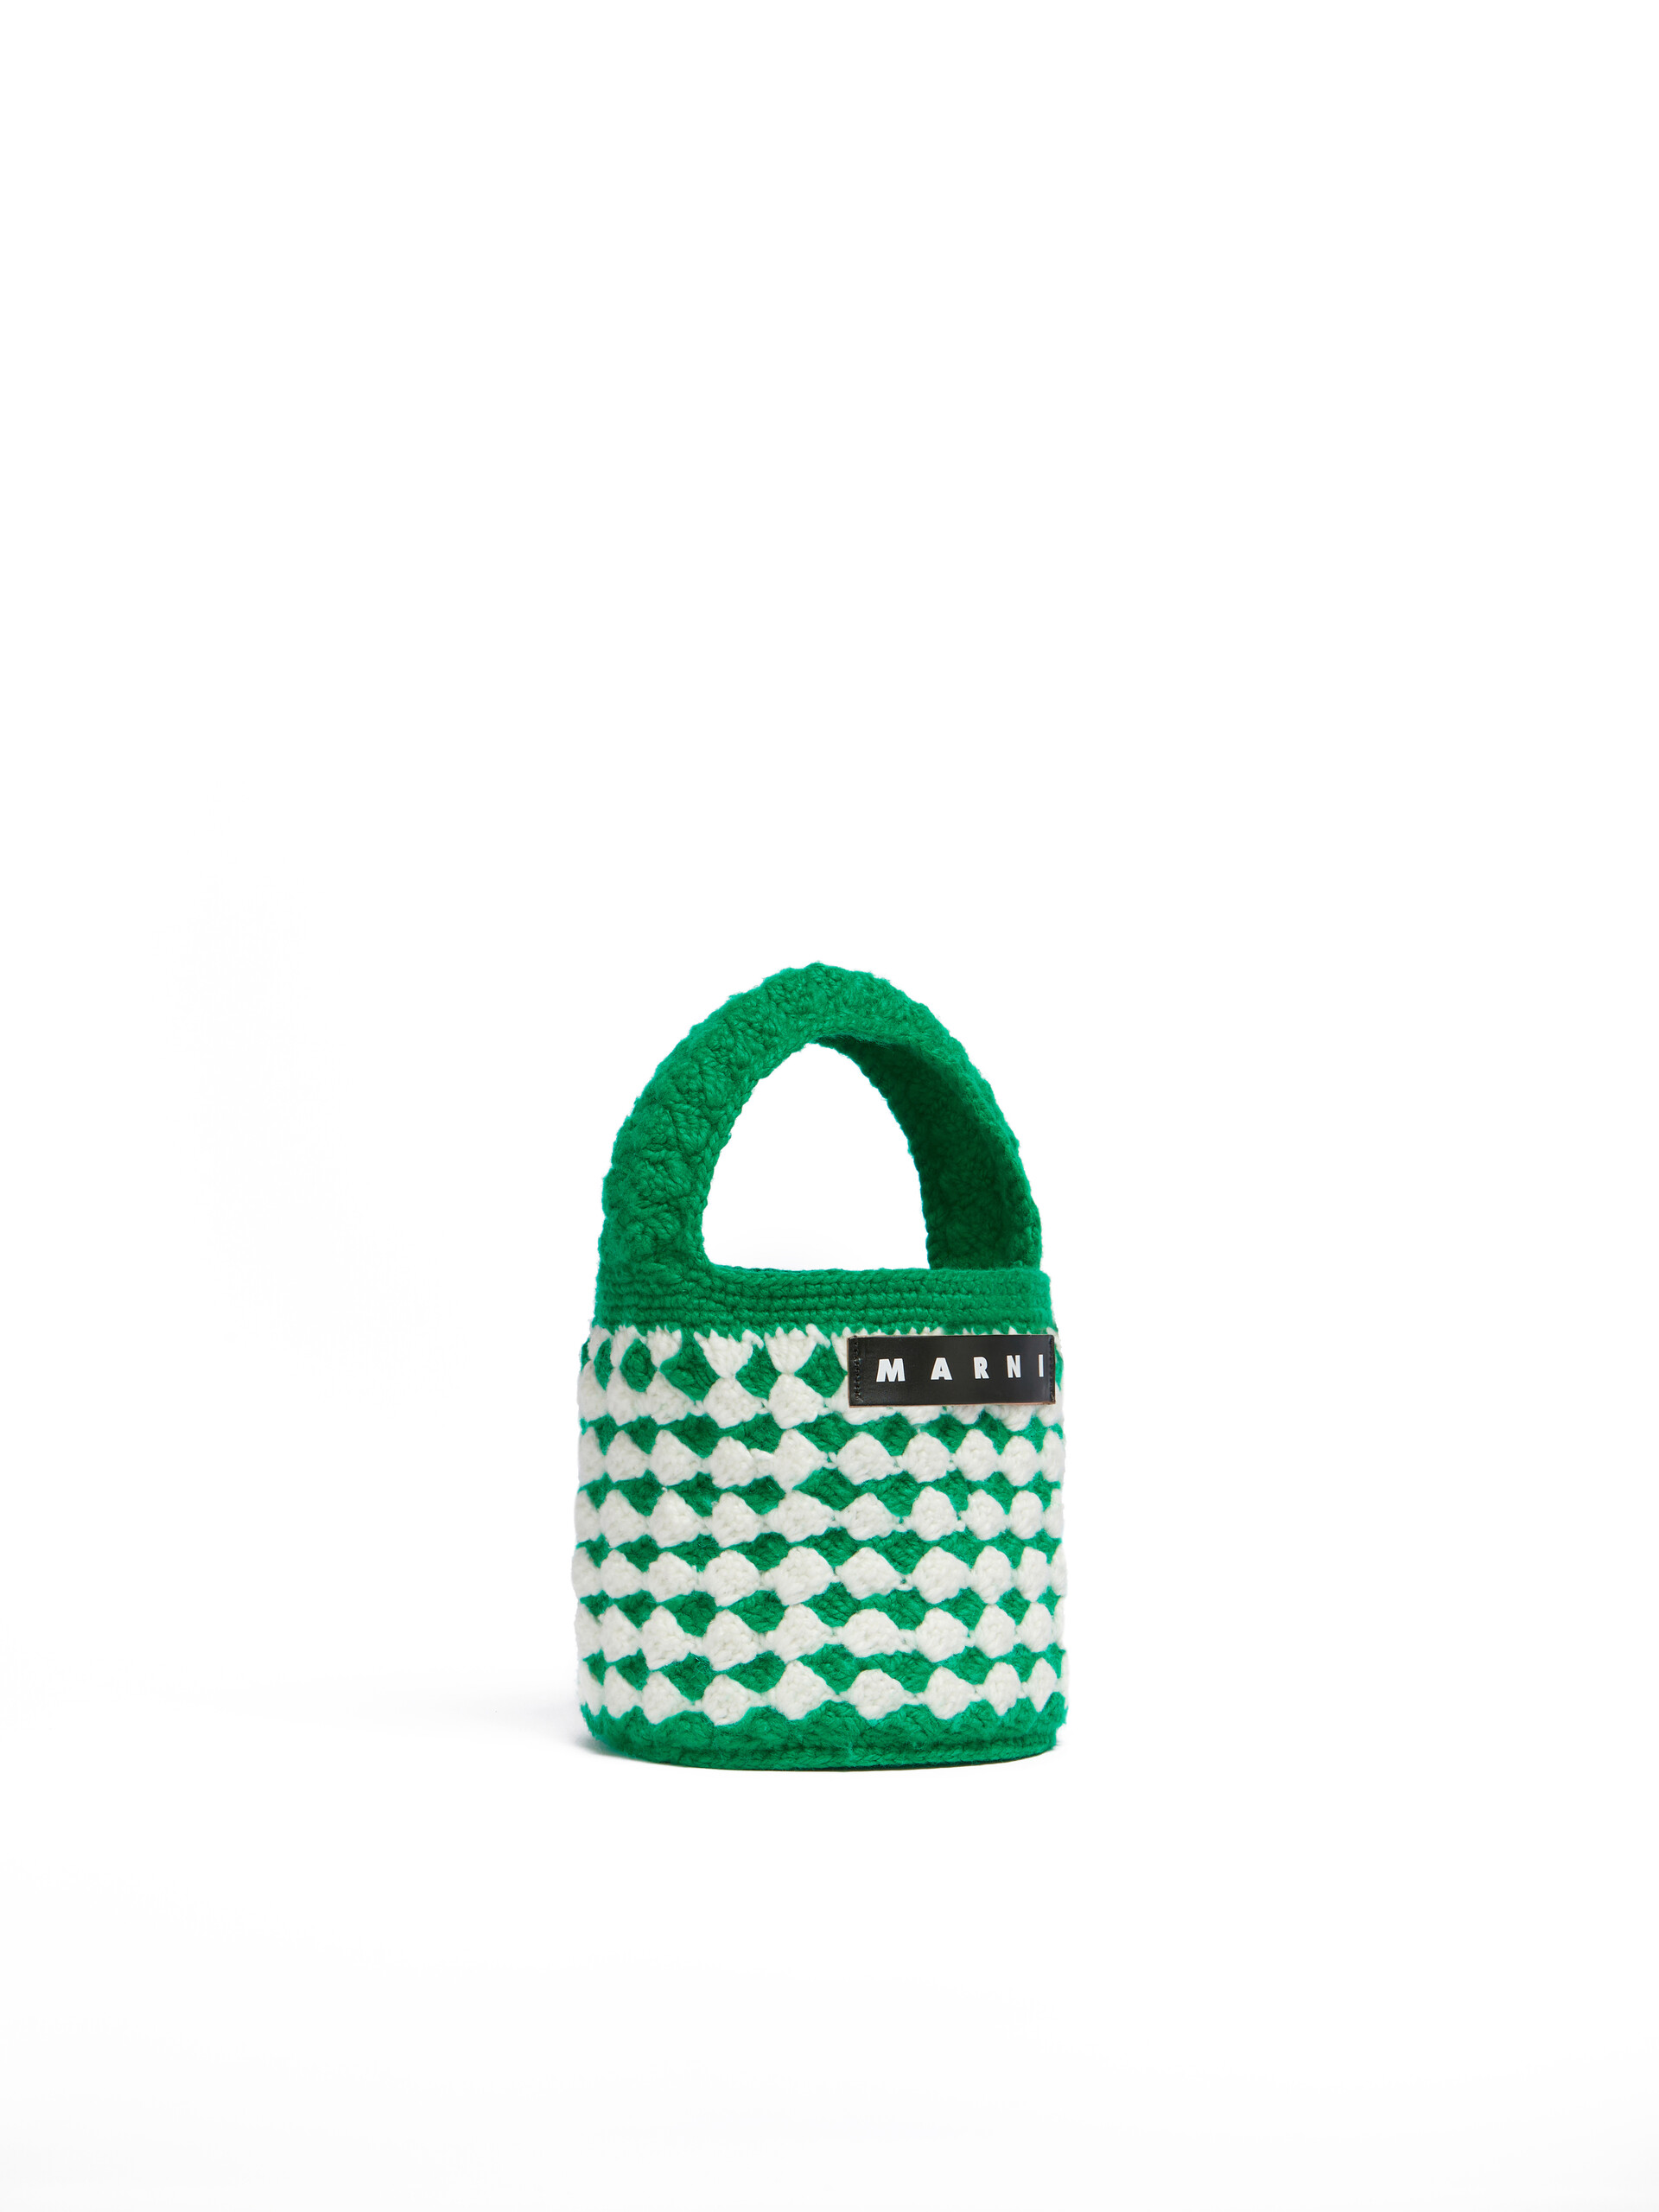 Purple Crochet Marni Market Rosal Bag - Shopping Bags - Image 2